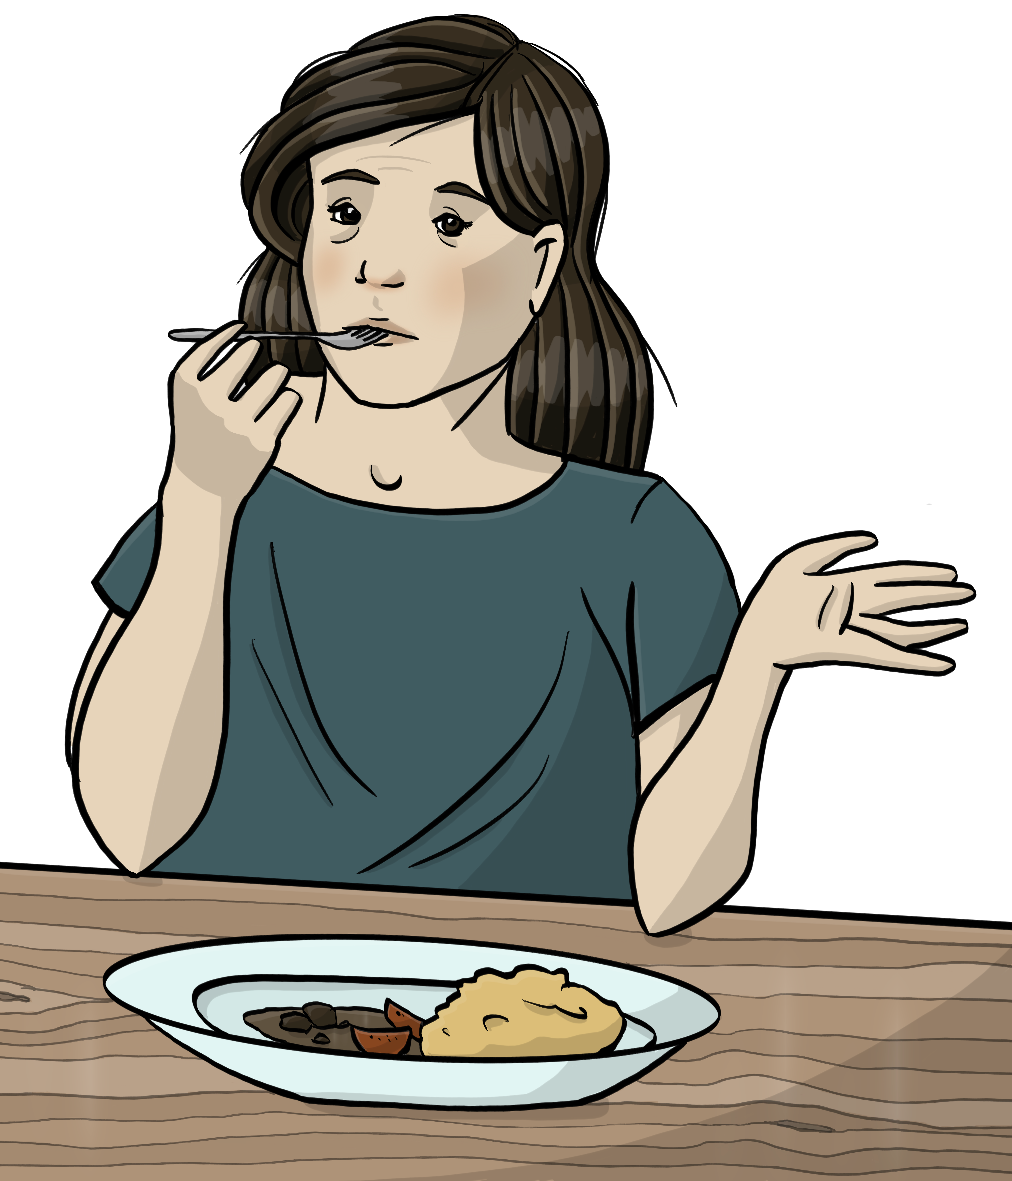 Eine Frau sitzt am Tisch. Vor ihr steht ein Teller mit Essen. Die Frau steckt eine Gabel in den Mund und hebt fragend die Hand. 